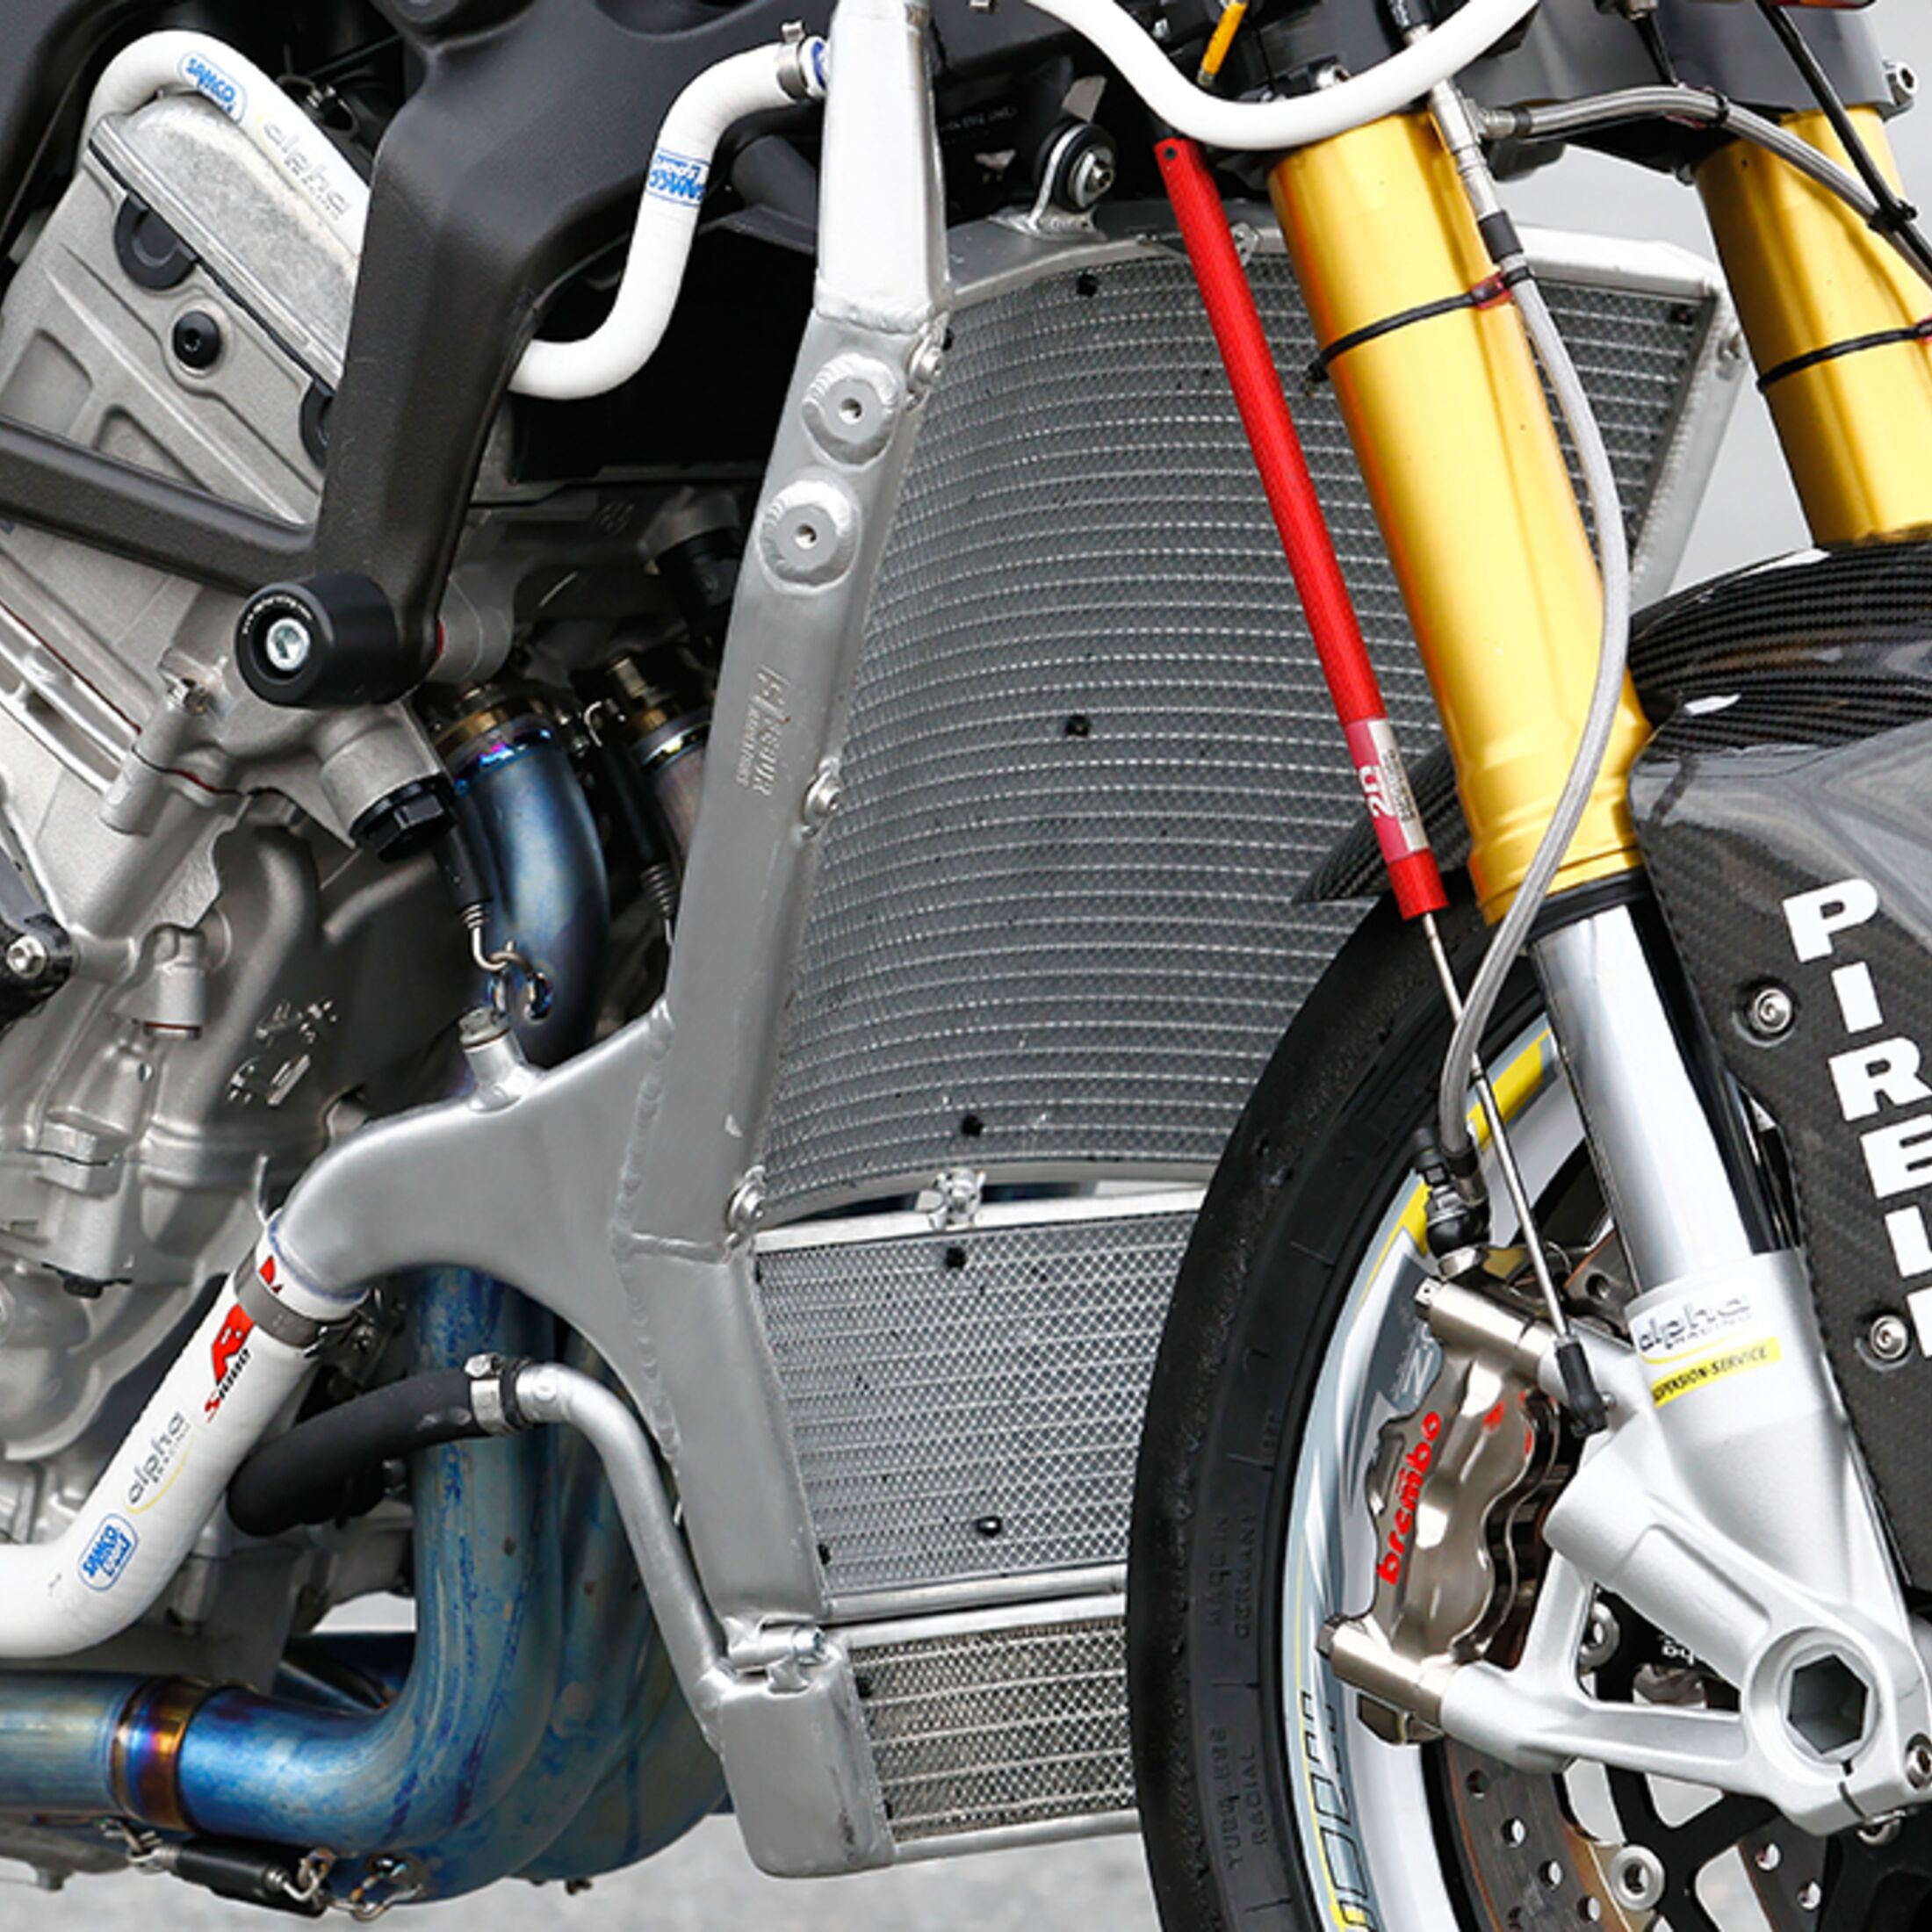 PS-Leserfrage zur Motorrad-Technik - Reinigung des Kühlers